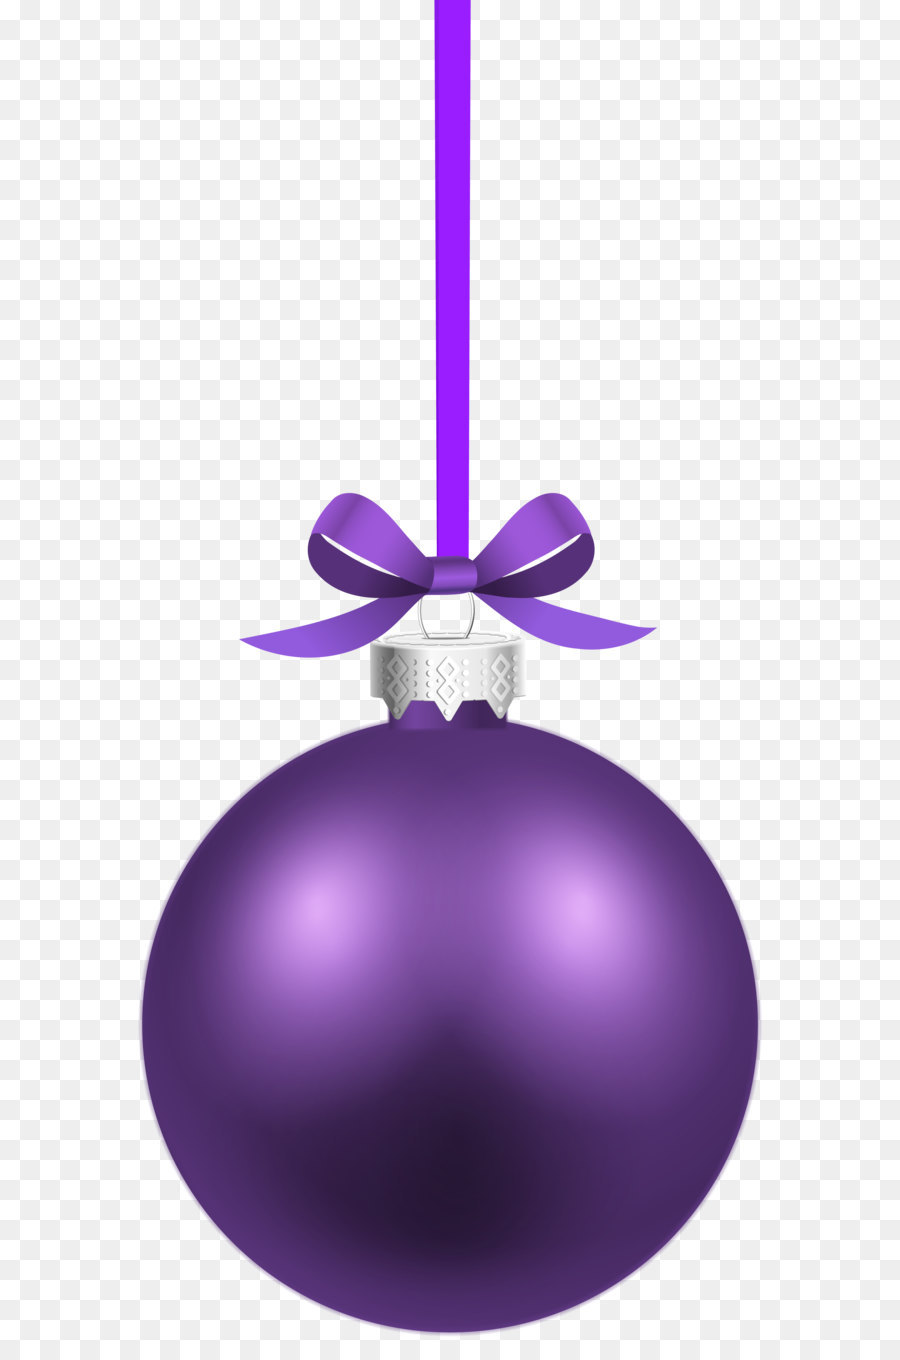 Weihnachten ornament Lila Weihnachten Dekoration clipart - Lila Weihnachten Hängende Kugel PNG Clipart Bild